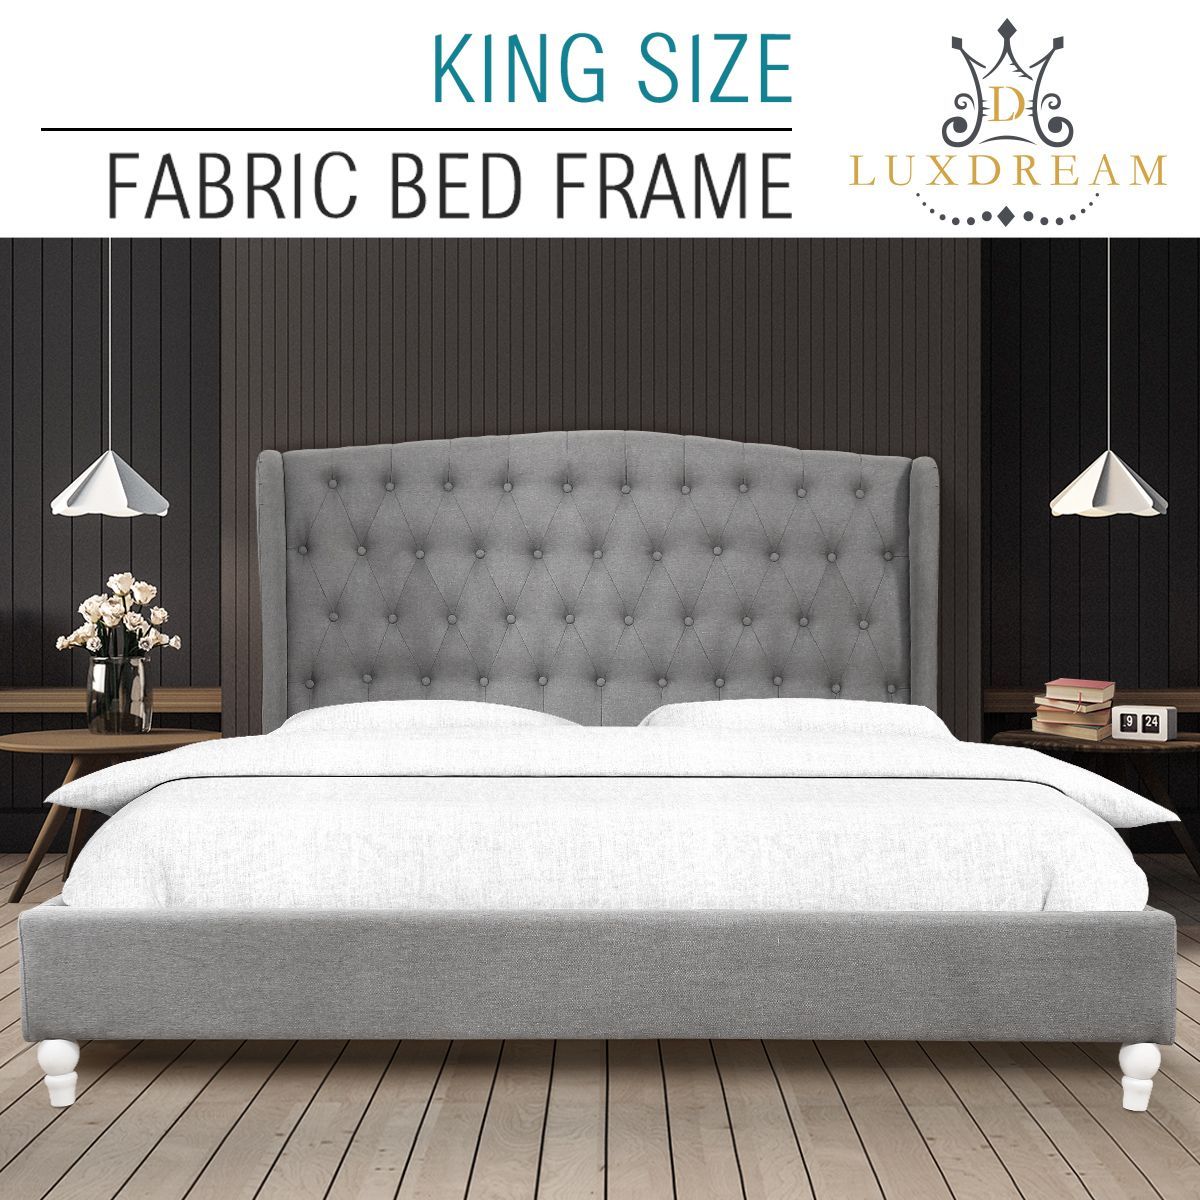 LUXDREAM Wooden King Upholstered Platform Bed Frame with Wooden Slats